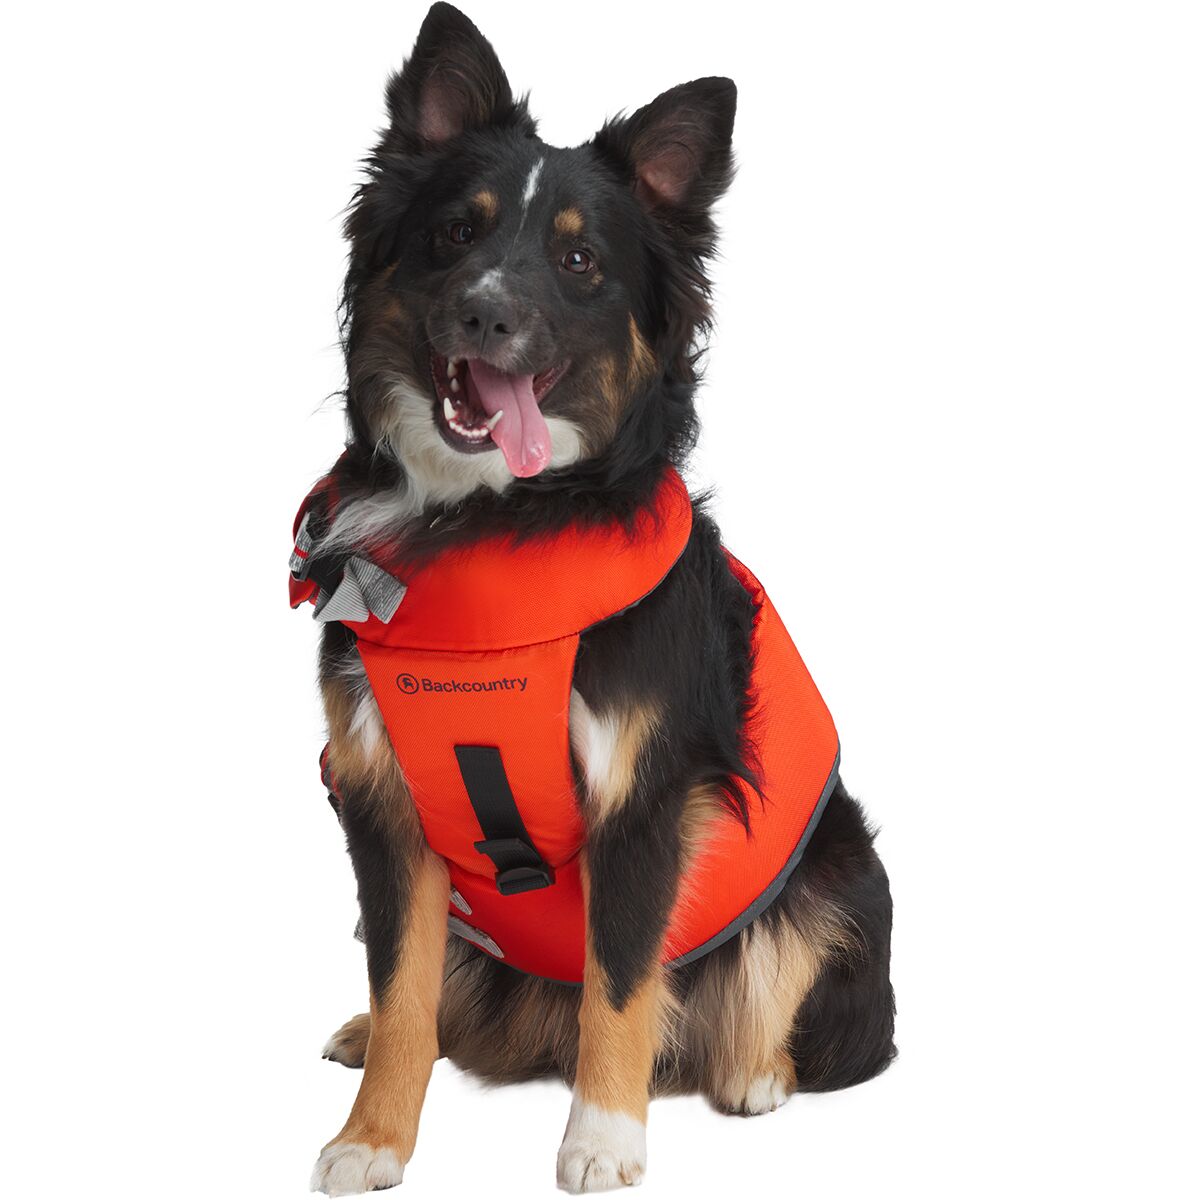 Dogcheer Dog Life Jacket Dog Life Swim Vest Small Medium Large Reflective Puppy Life Jacket Dog Floatation Vest PFD with Enhanced Buoyancy and Rescue Handle for Swimming Boating 